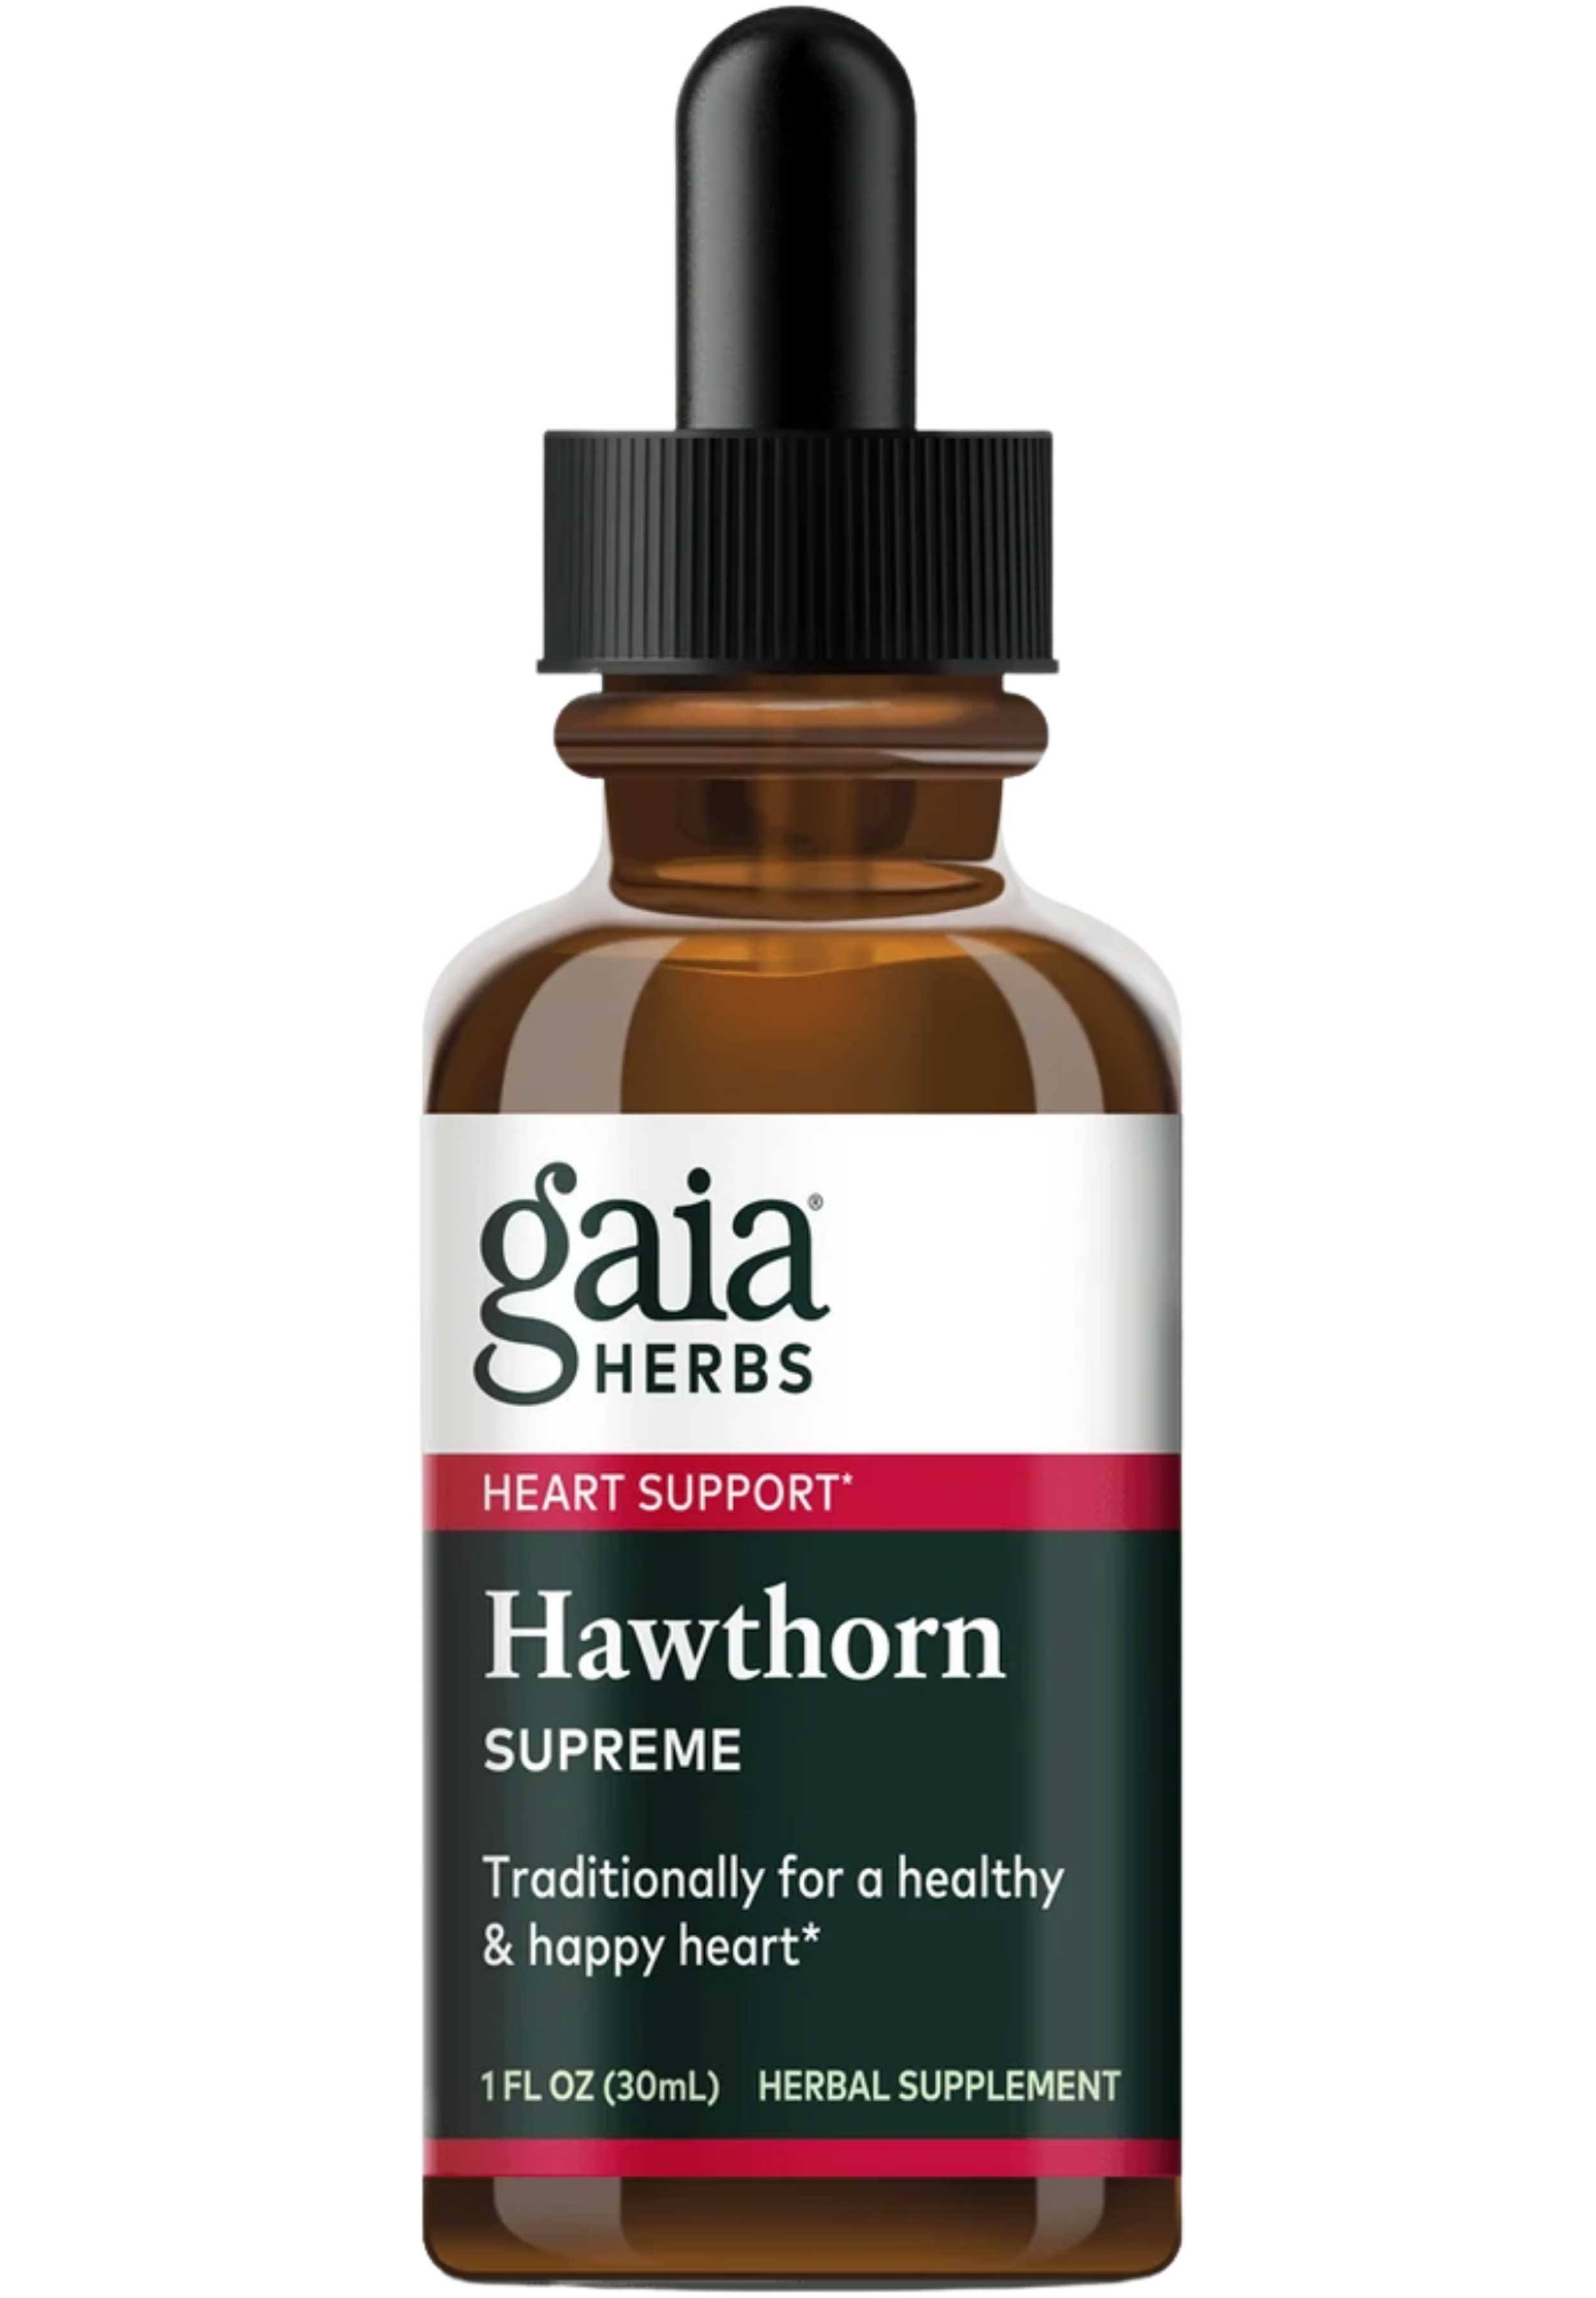 Gaia Herbs Hawthorn Supreme Heart Support 1 fl oz